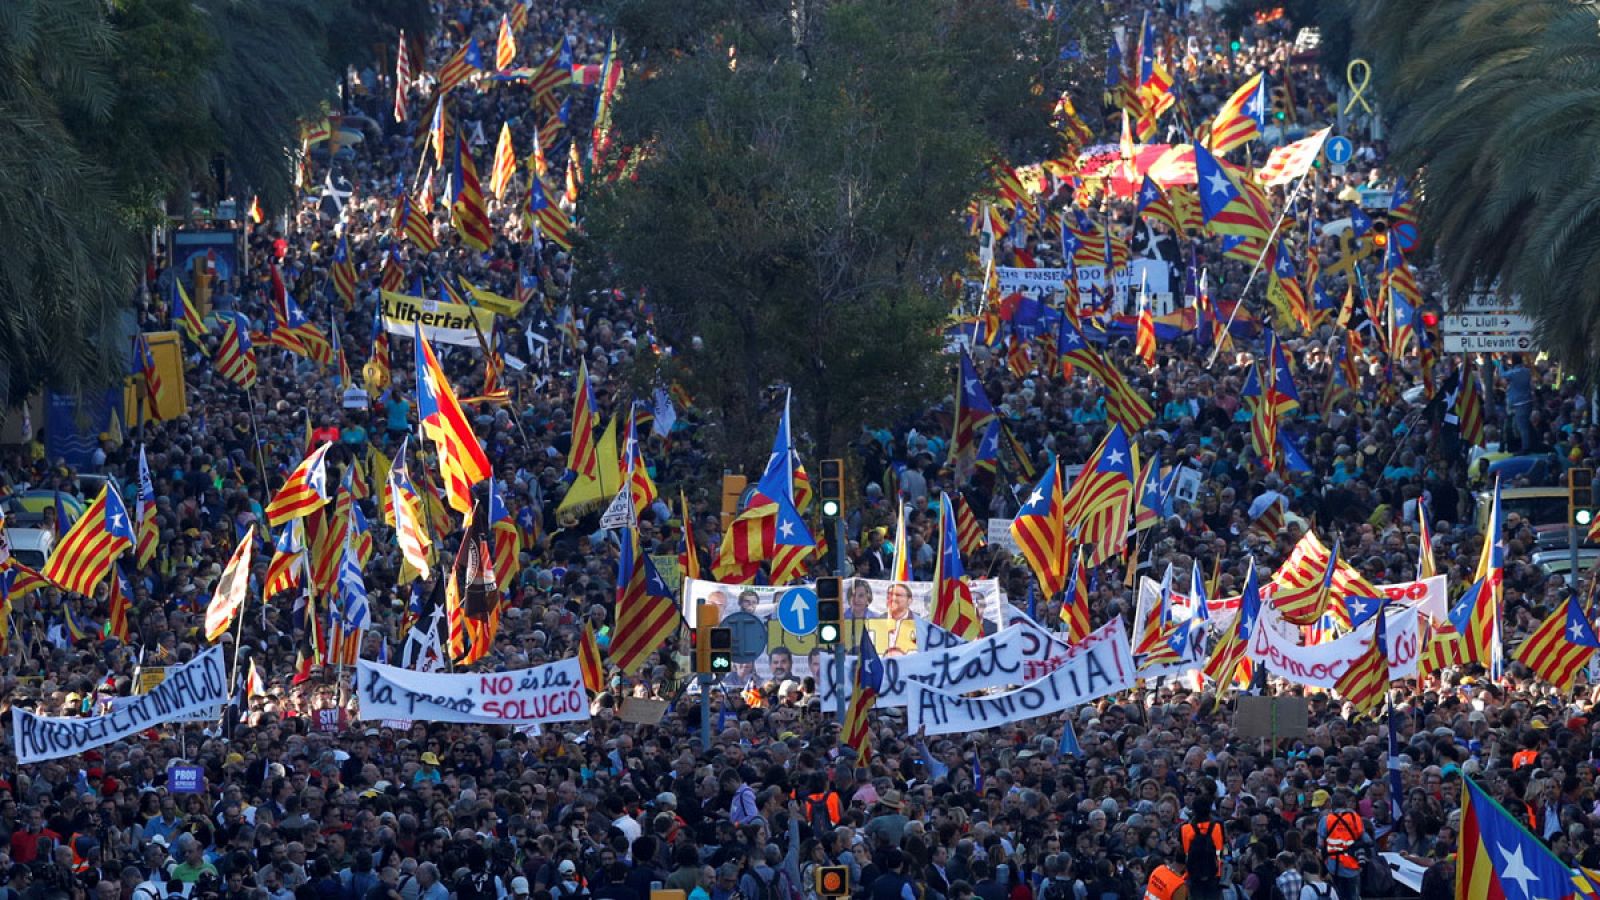 Sentencia procés: Arranca la manifestación de ANC y Òmnium en Barcelona